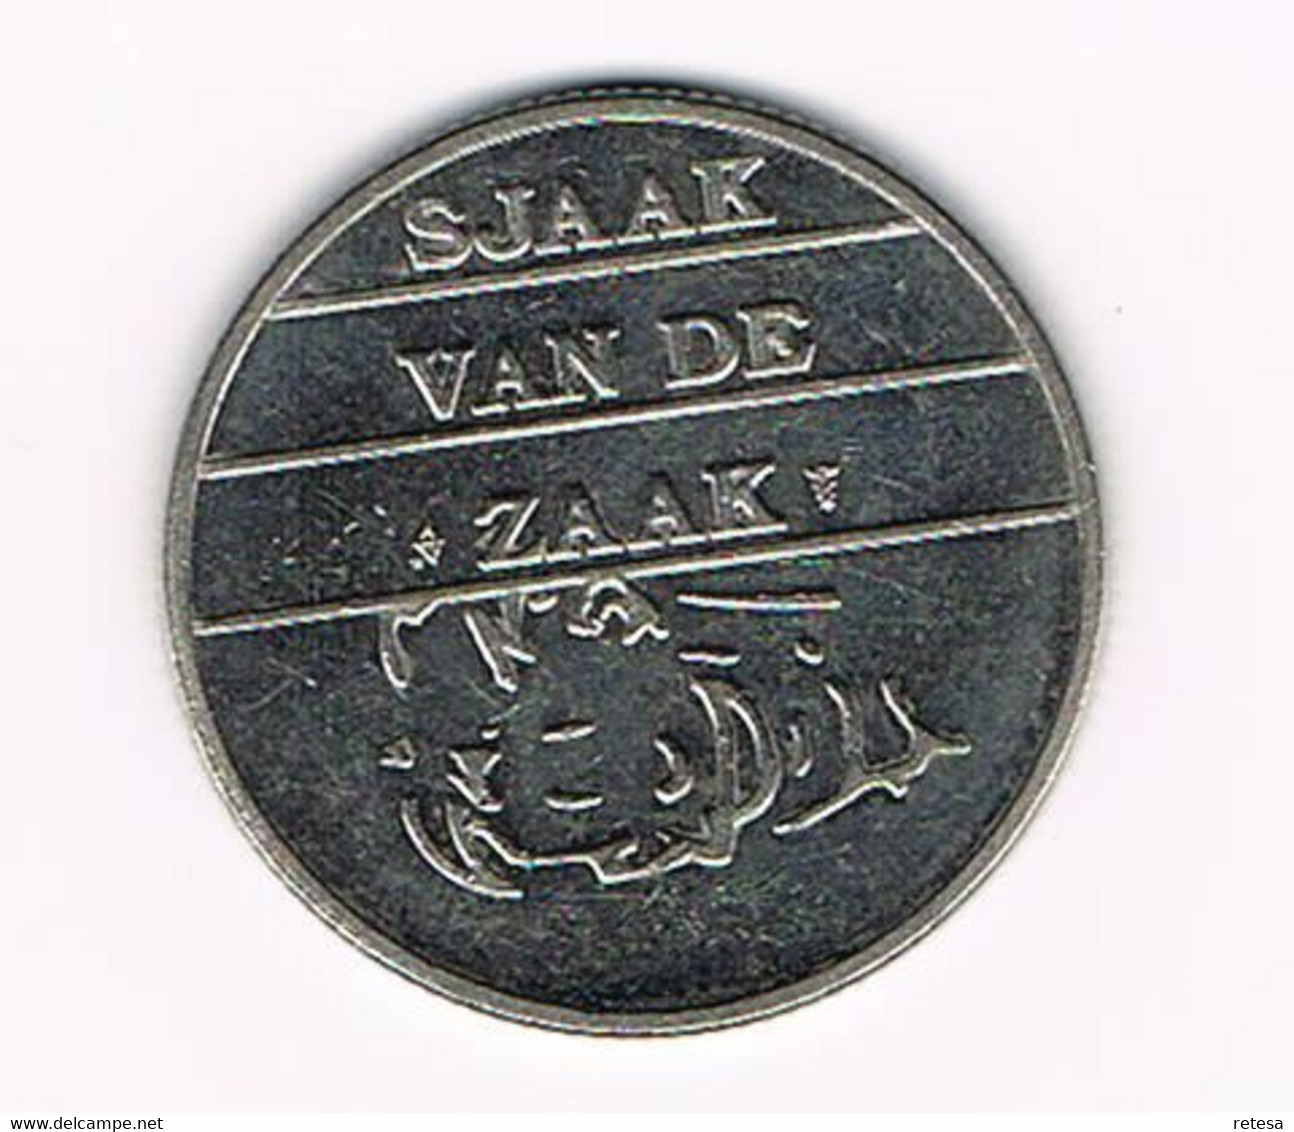 # NEDERLAND  SJAAKIE KONING DER HORICA 2005 MISE EN PLACE - SJAAK VAN DE ZAAK - Pièces écrasées (Elongated Coins)